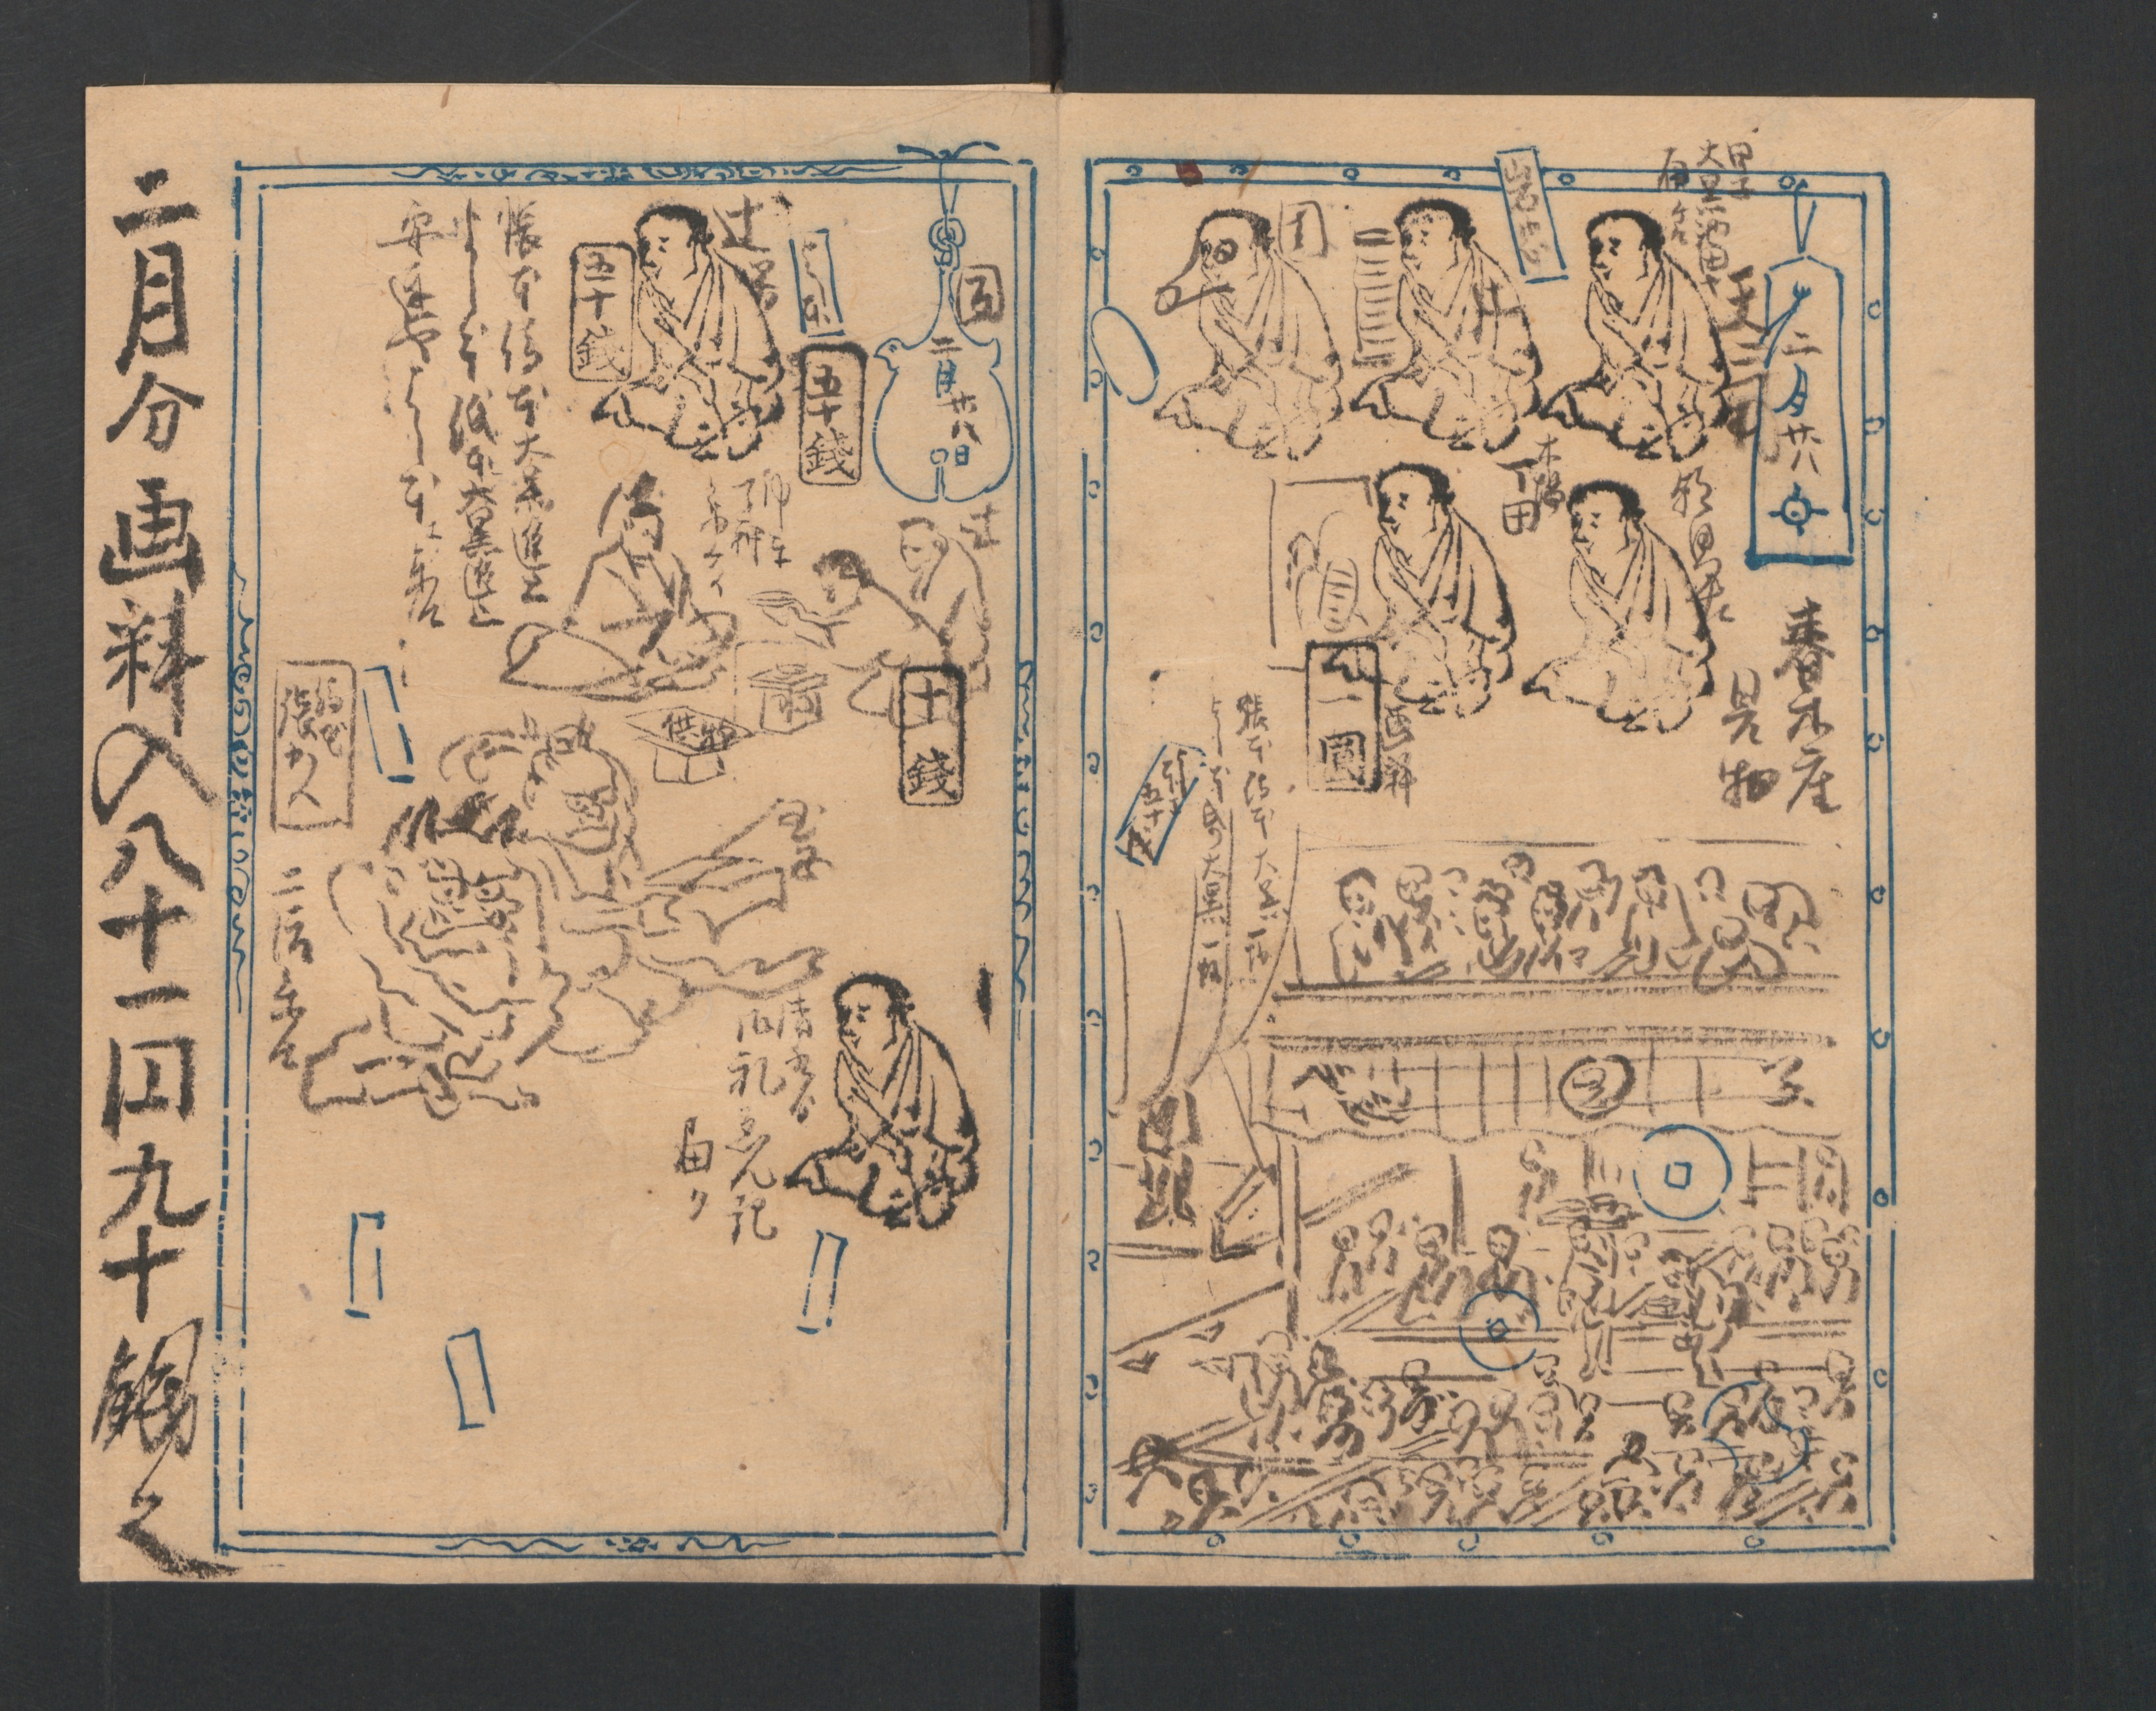 Kawanabe Kyōsai 河鍋暁斎, Kyōsai Sketchbook (Kyōsai manga) 暁斎漫画, Japan, Meiji period (1868–1912)